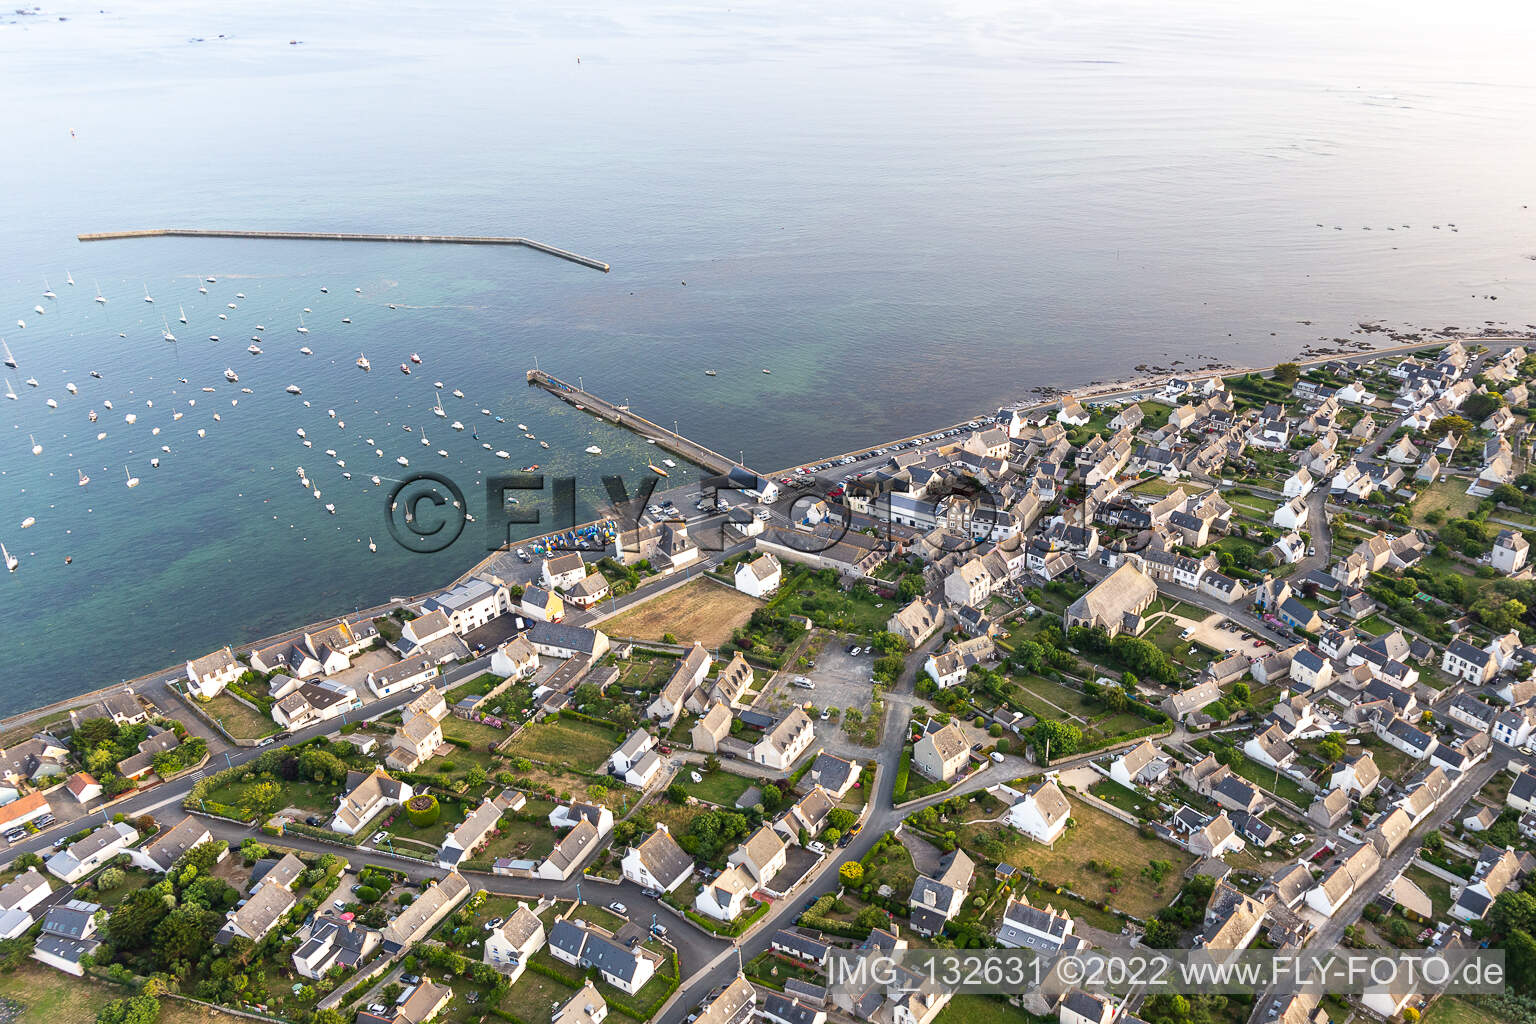 Luftbild von Estacade de Kérity in Penmarch im Bundesland Finistère, Frankreich